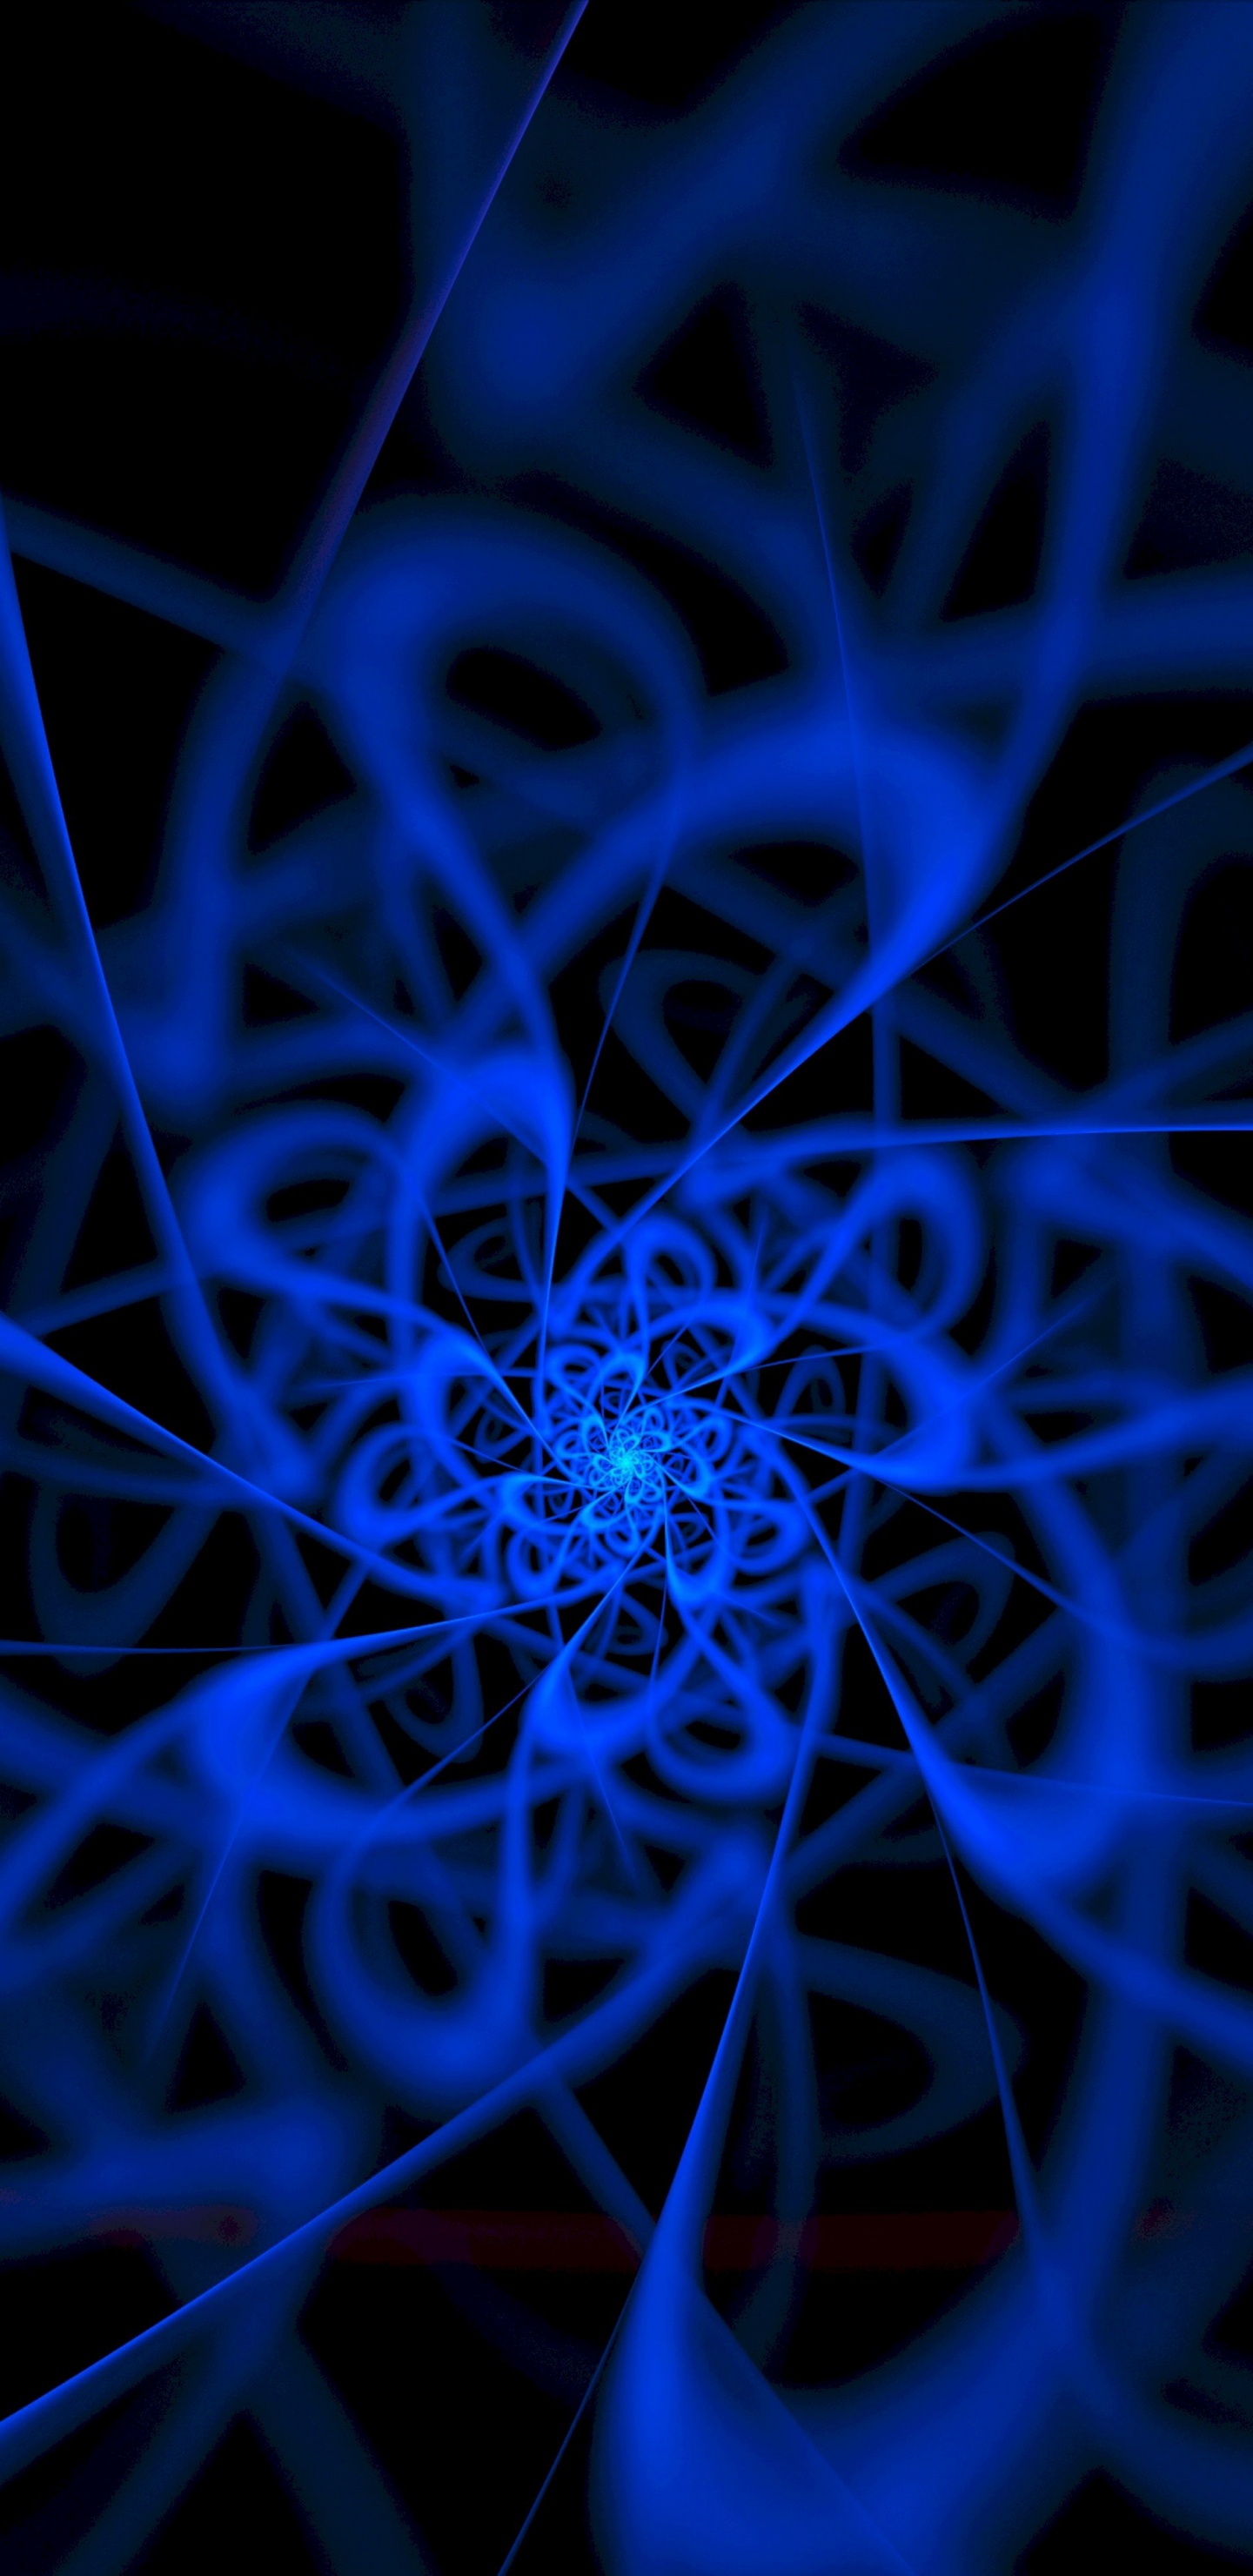 Blaue Und Weiße Spirale Abbildung. Wallpaper in 1440x2960 Resolution